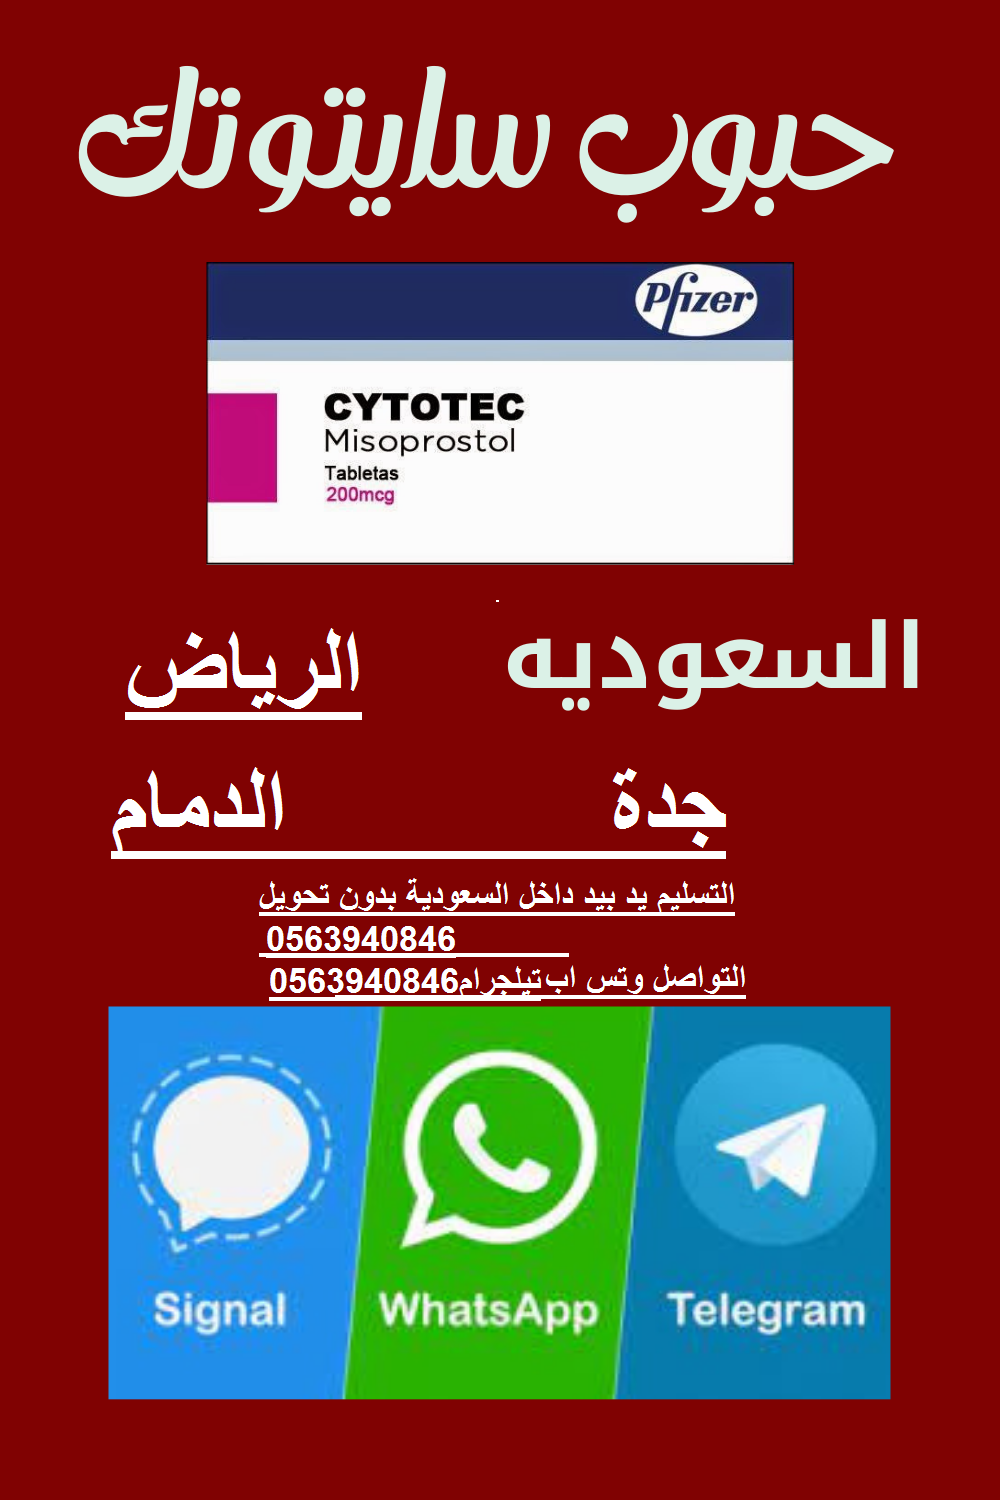 cytotec| حبوب اجهاض في الرياض 0563940846